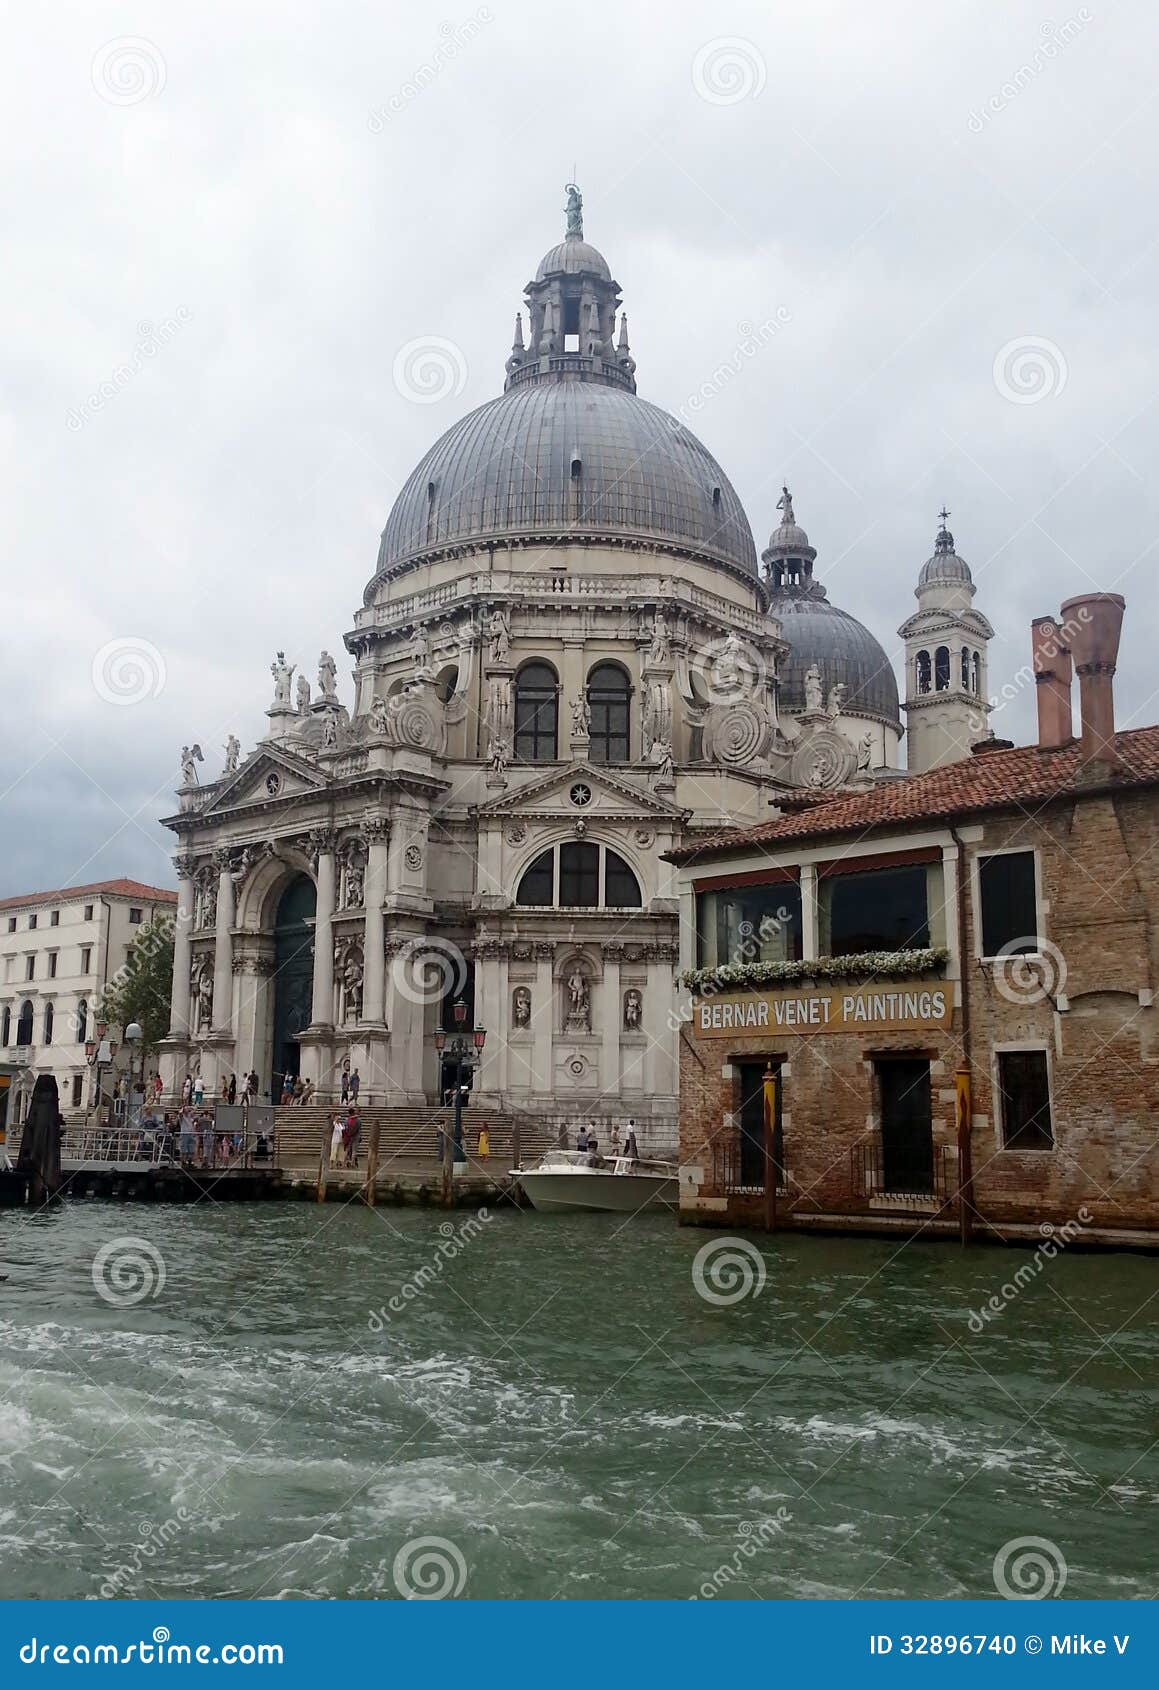 Venedig sikt från en vattentaxi